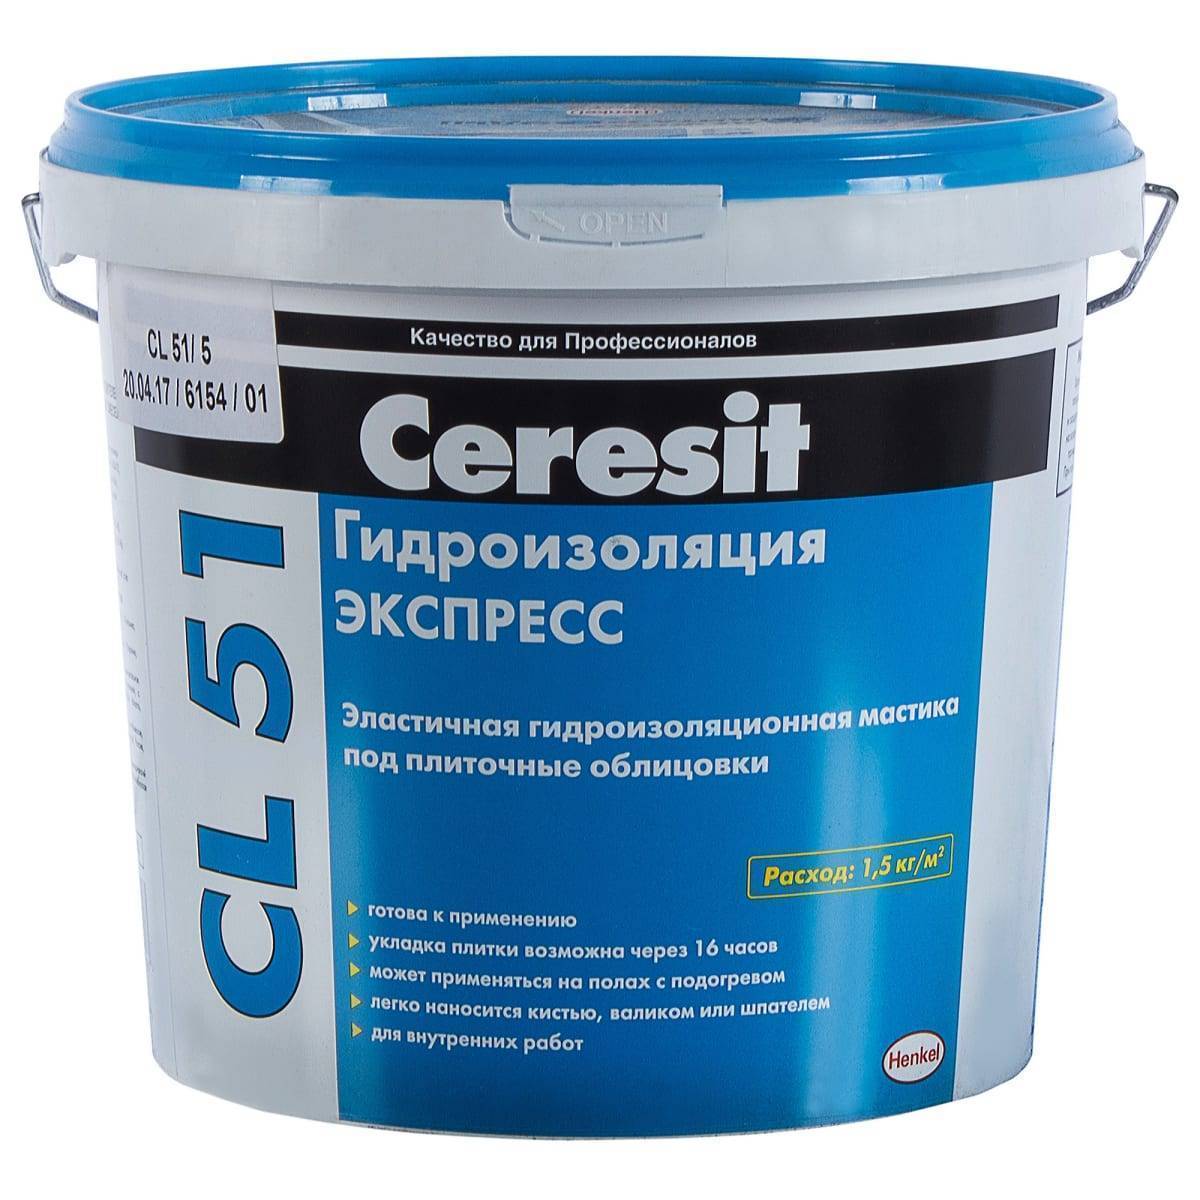 Характеристики, свойства и применение ремонтной смеси для бетона ceresit